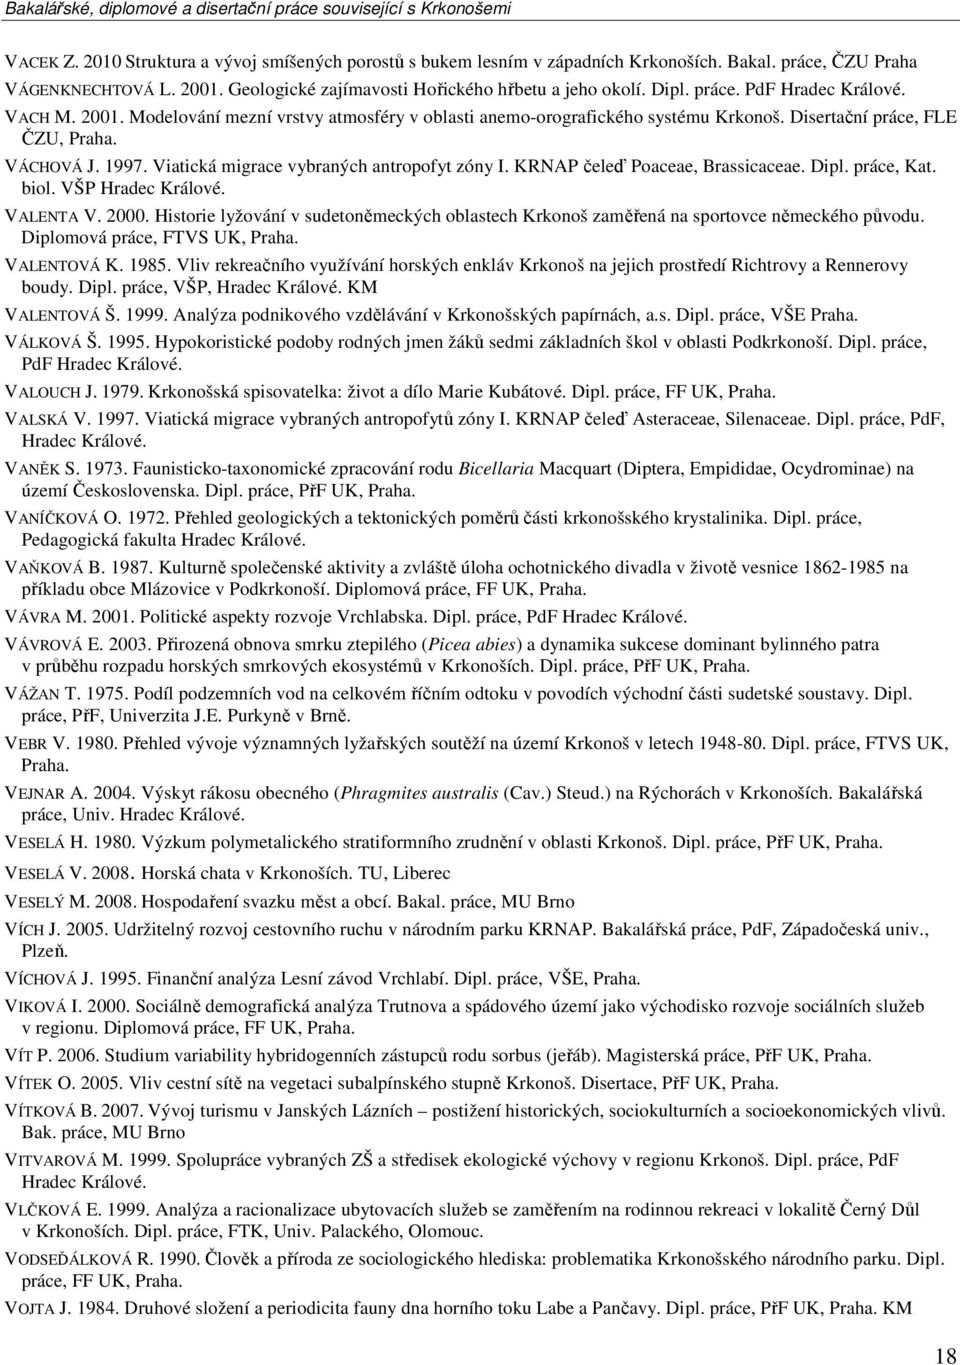 Viatická migrace vybraných antropofyt zóny I. KRNAP čeleď Poaceae, Brassicaceae. Dipl. práce, Kat. biol. VŠP Hradec Králové. VALENTA V. 2000.